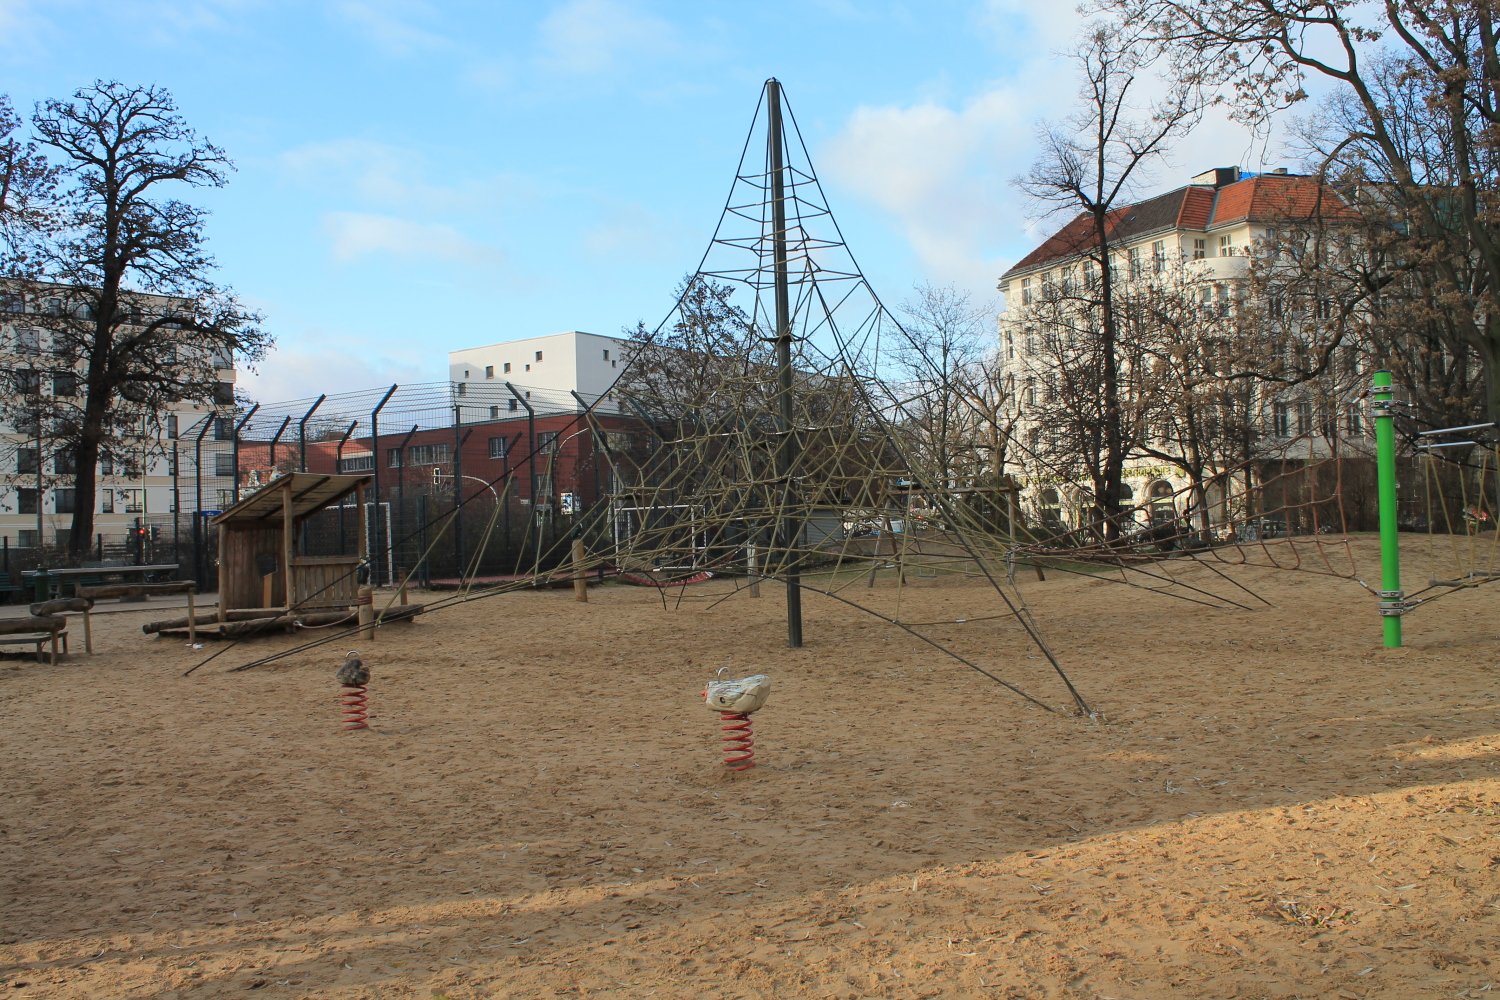 Spielplatz Preußenpark-Brandenburgische Straße